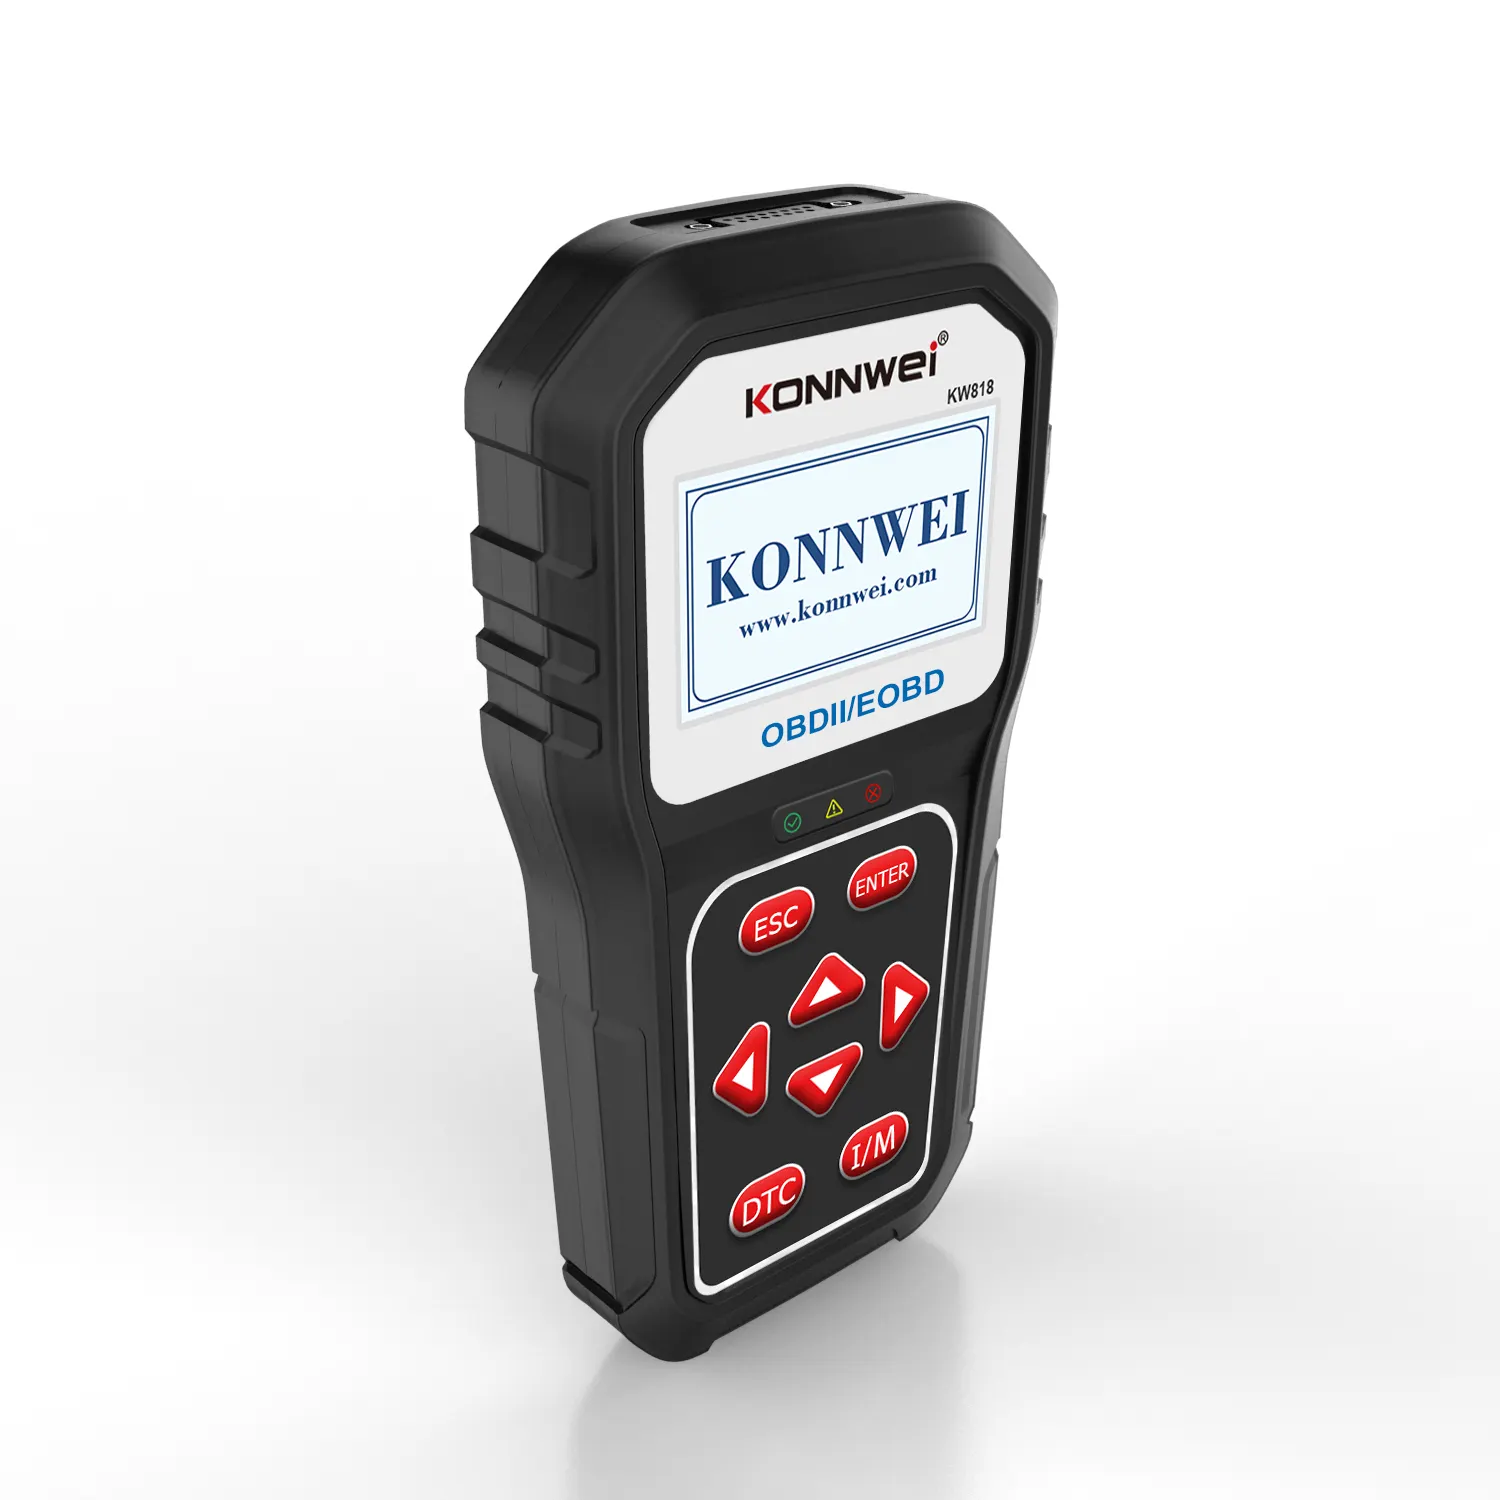 KONNWEI-herramienta de diagnóstico KW818, autoescáner OBD2, EOBD, lector de código con idioma alemán, bluetooth, actualizado